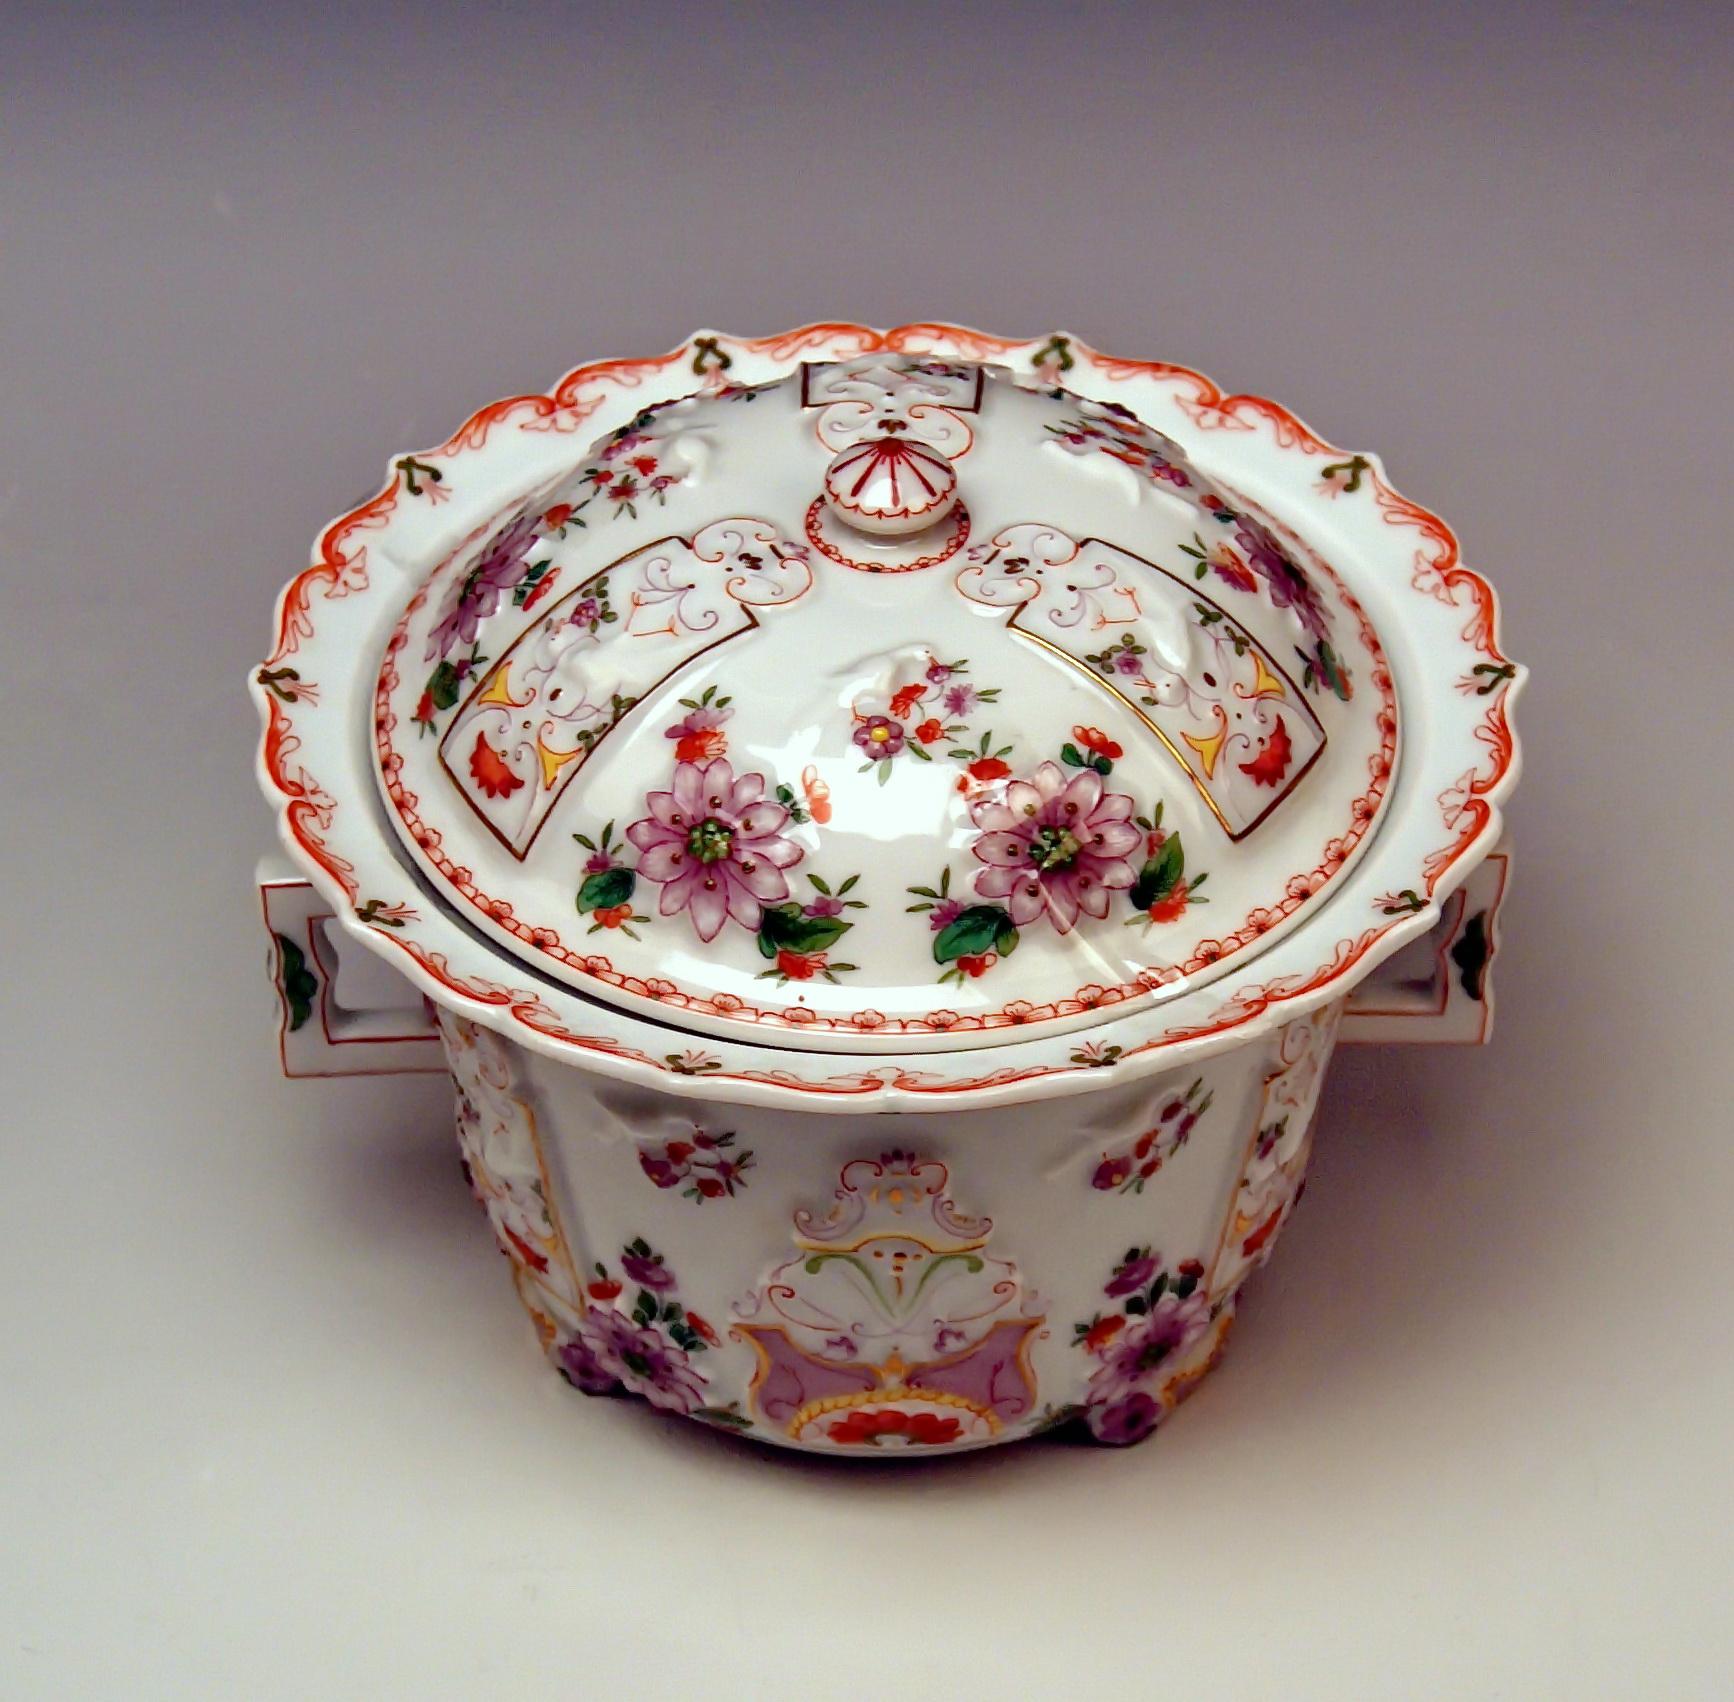 Nous vous invitons ici à regarder un splendide et plus rare objet en porcelaine de Vienne Augarten.
Il s'agit d'un pot à huile ou d'une bonbonnière à deux anses et à couvercle, de style baroque, fortement influencé par l'art asiatique (chinois). Sa